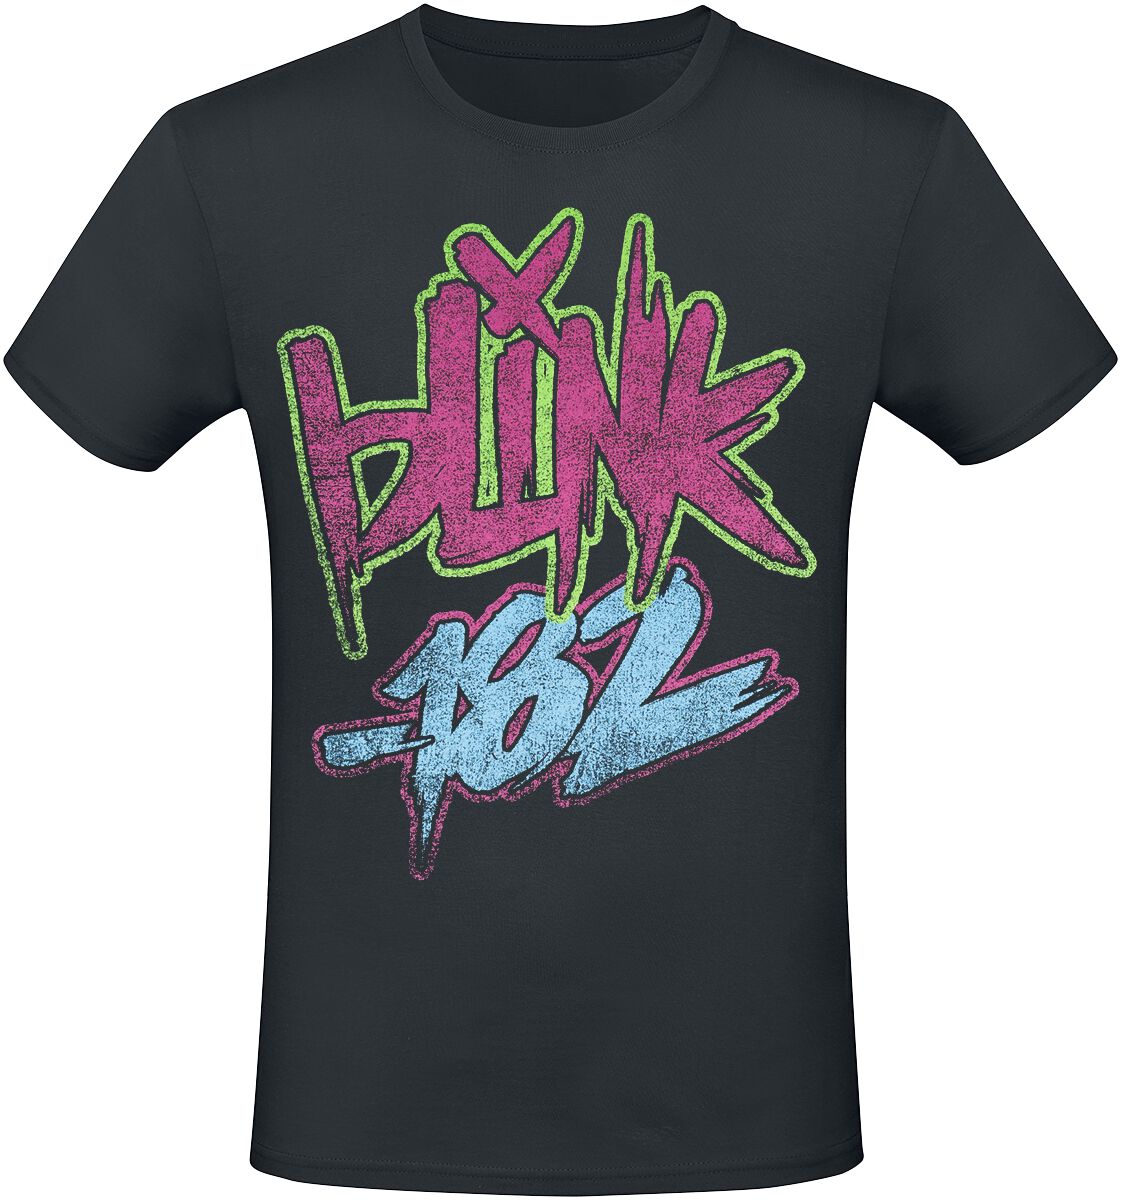 Blink-182 T-Shirt - Text - S bis 3XL - für Männer - Größe L - schwarz  - Lizenziertes Merchandise!